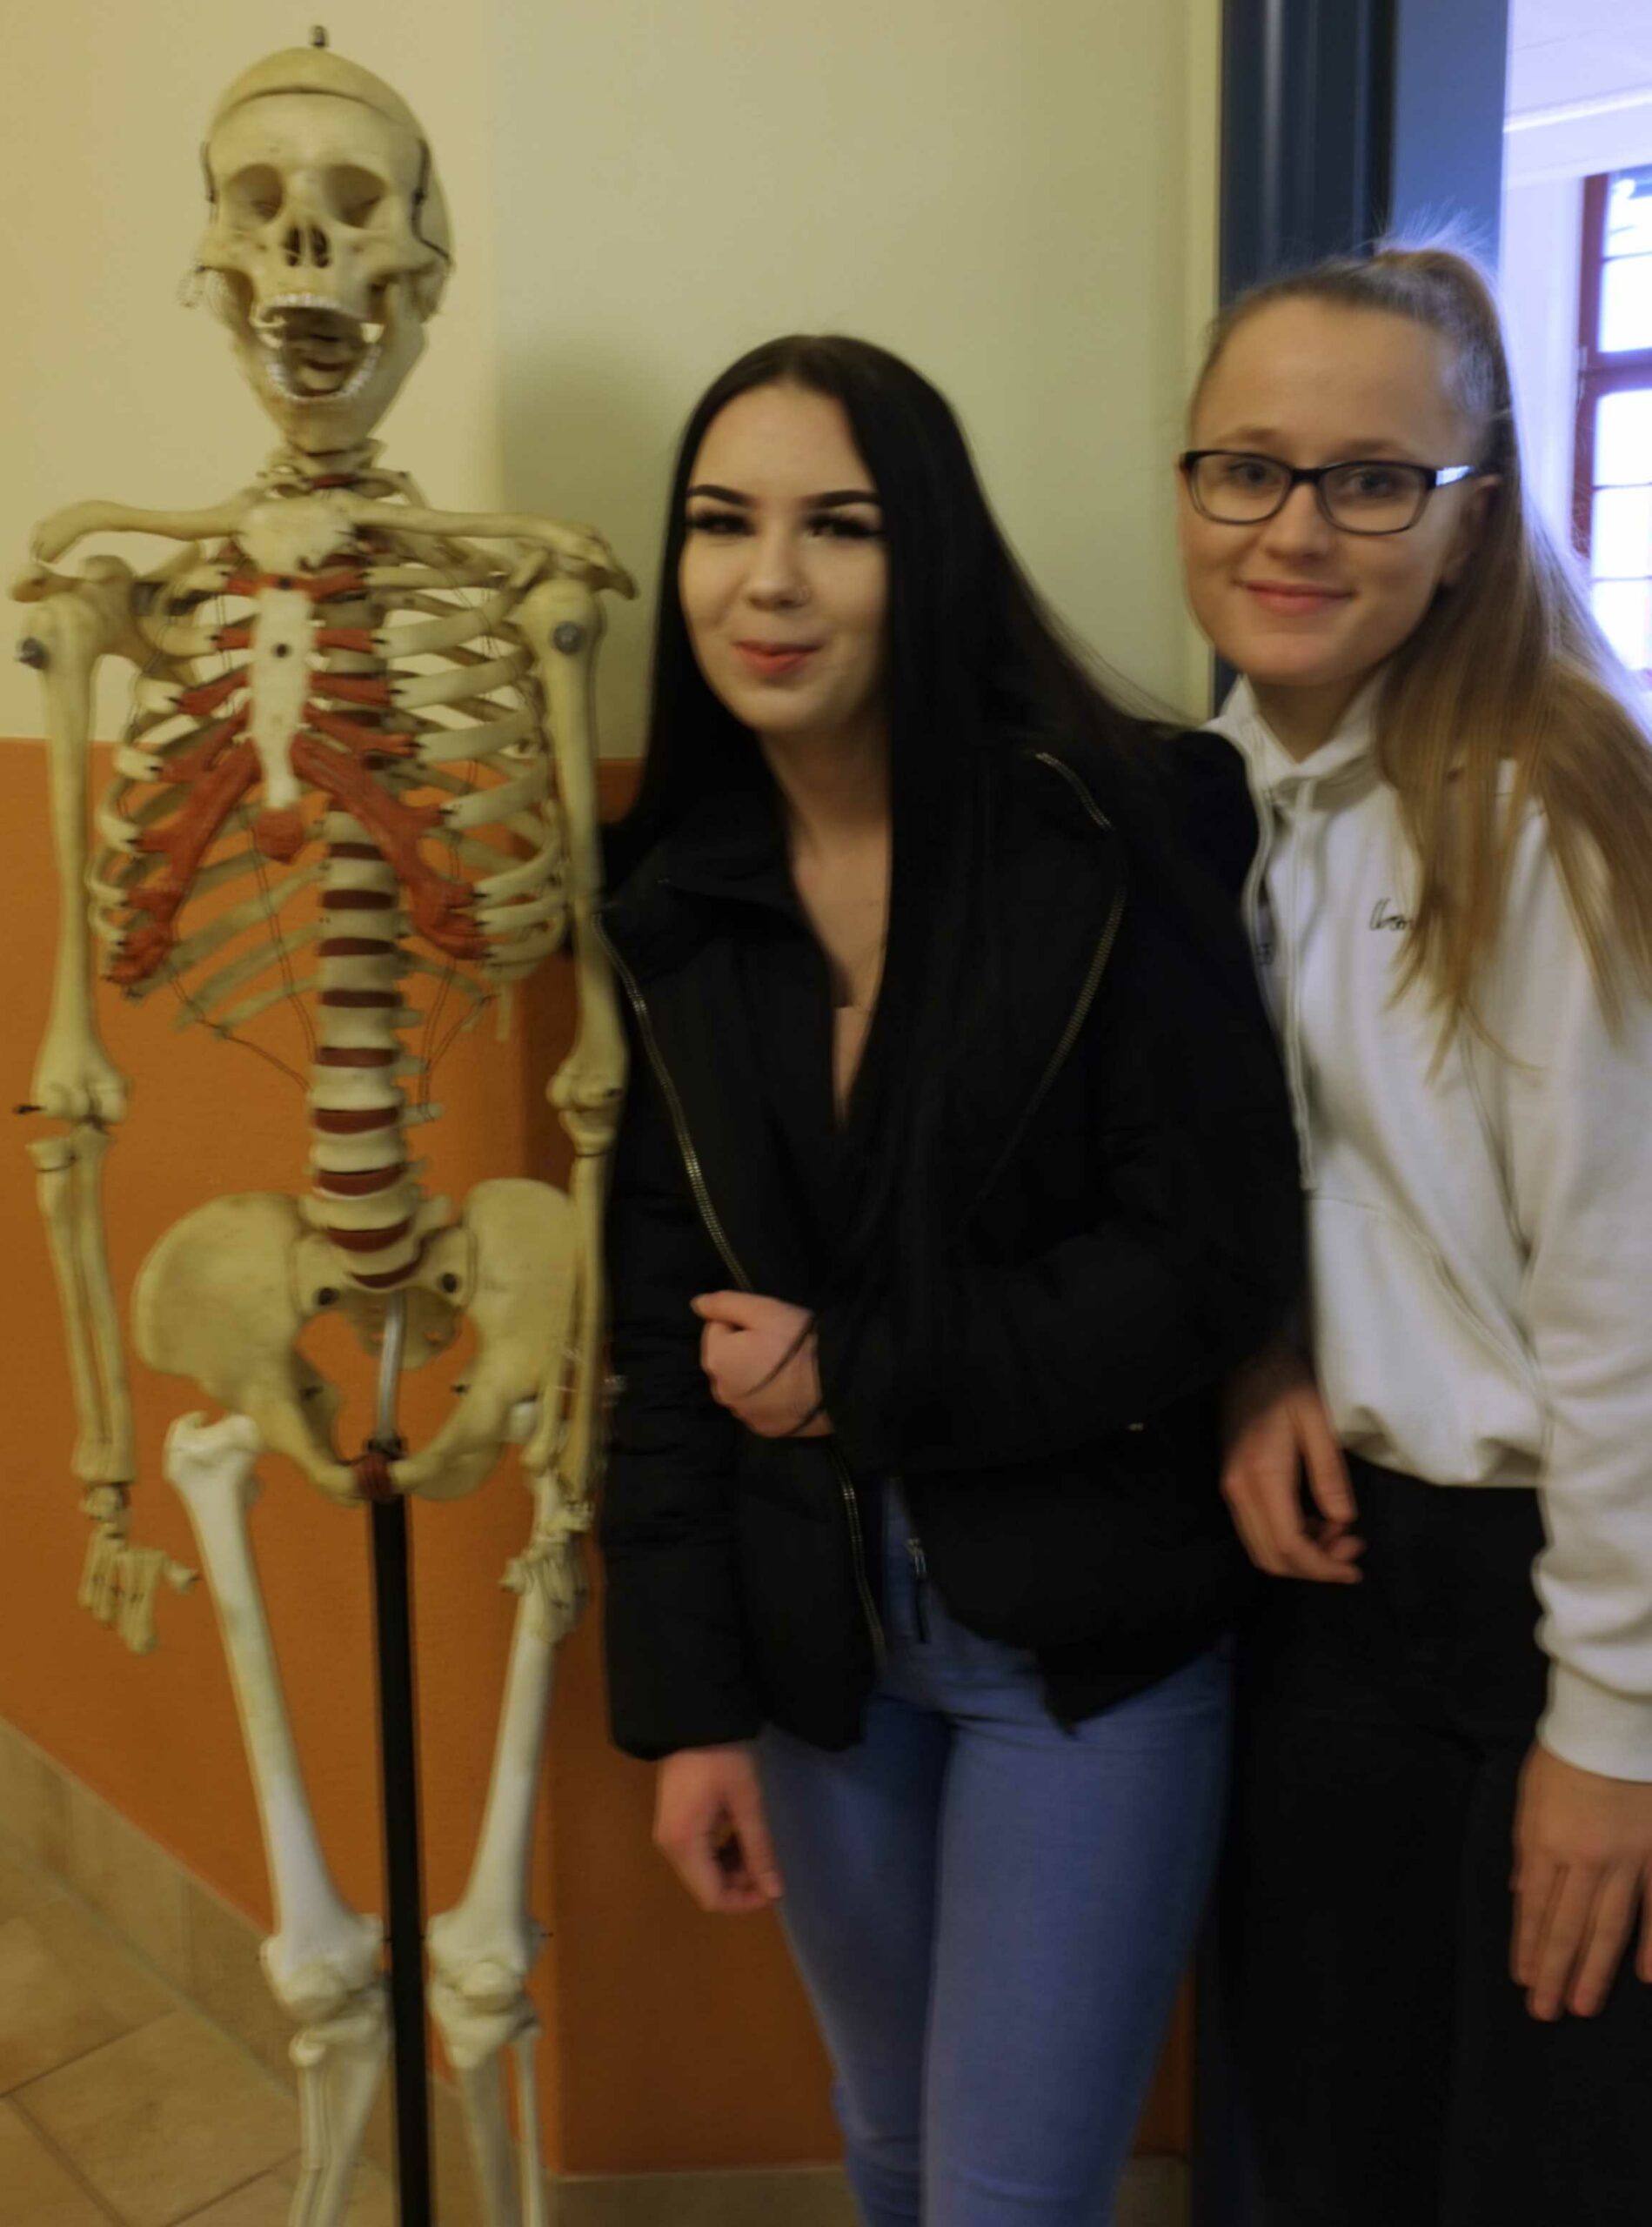 Auf diesem Bild sehen Sie zwei Schülerinnen neben einem Skelett.